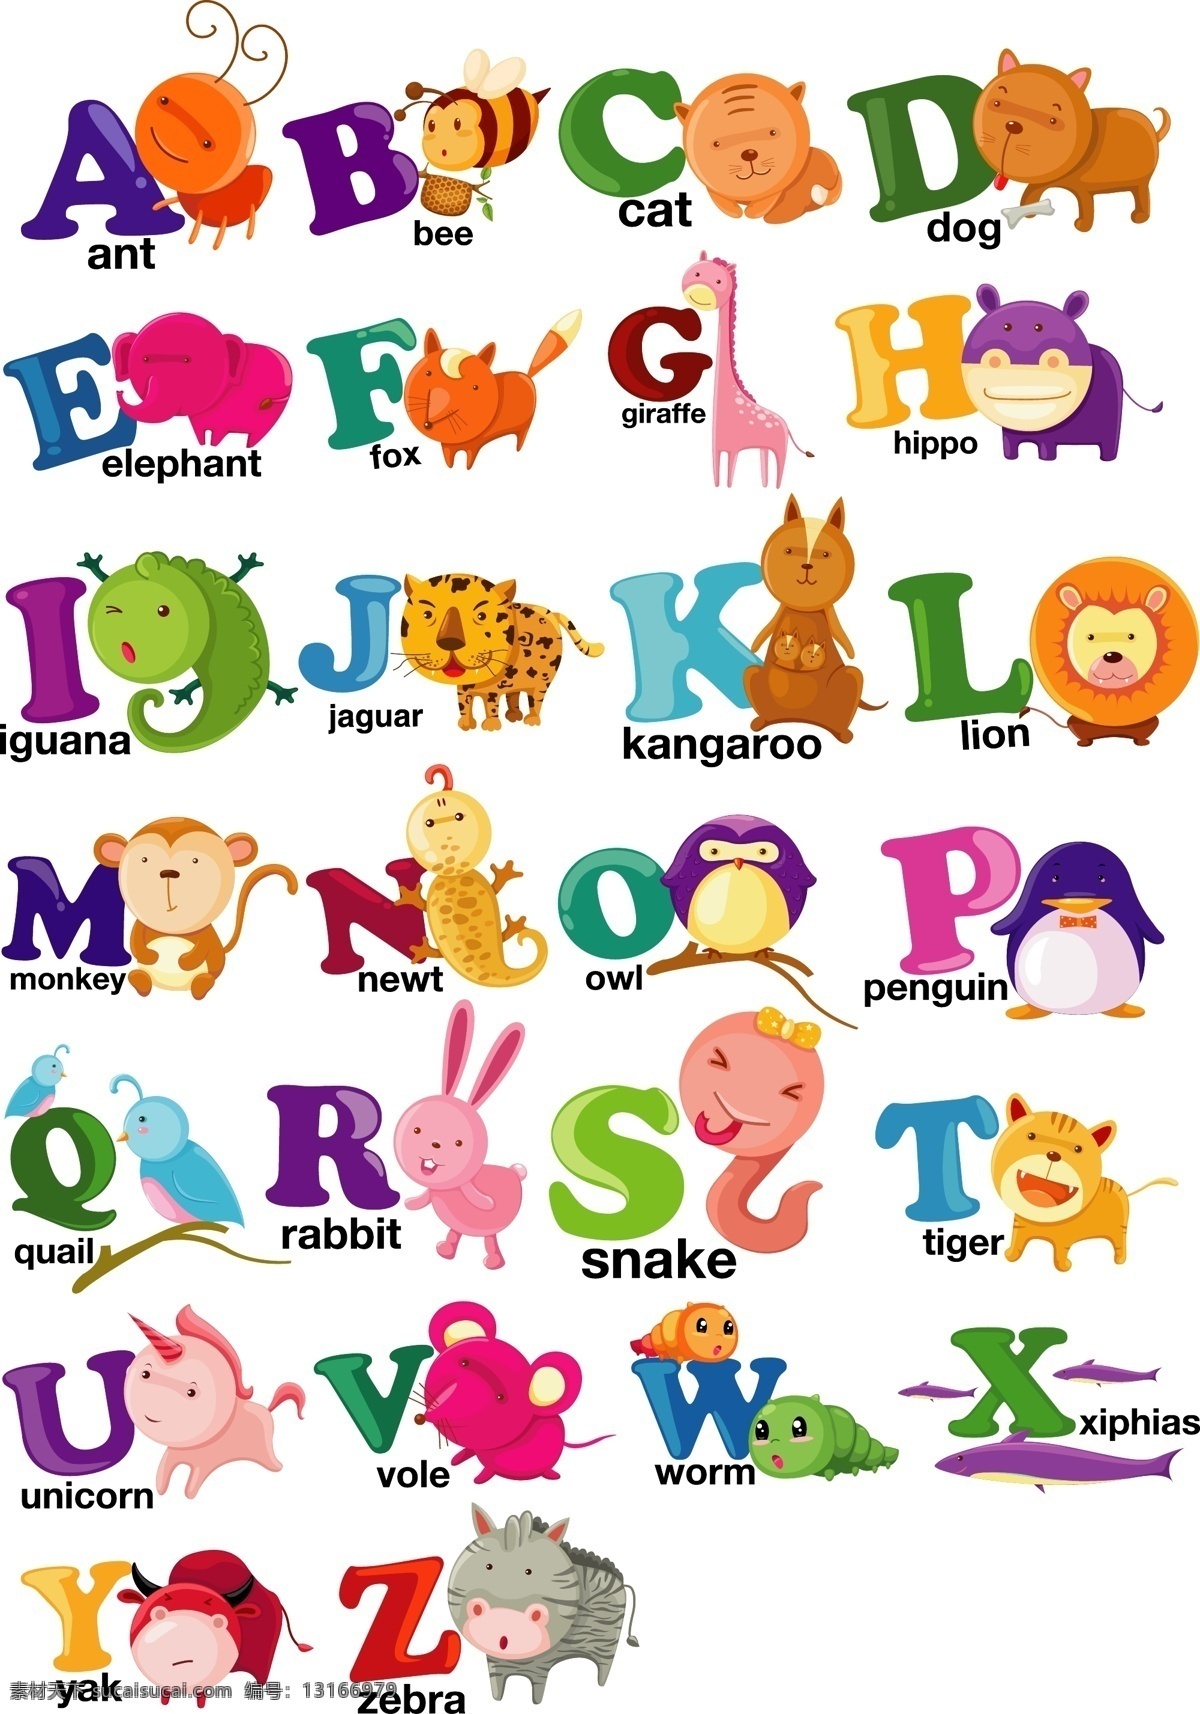 动物字母 字母 矢量字母 卡通字母 手绘字母 字母插画 创意字母 艺术字母 活泼字母 儿童字母 小孩字母 矢量动物 卡通动物 手绘动物 动物集合 数字字母 标志图标 其他图标